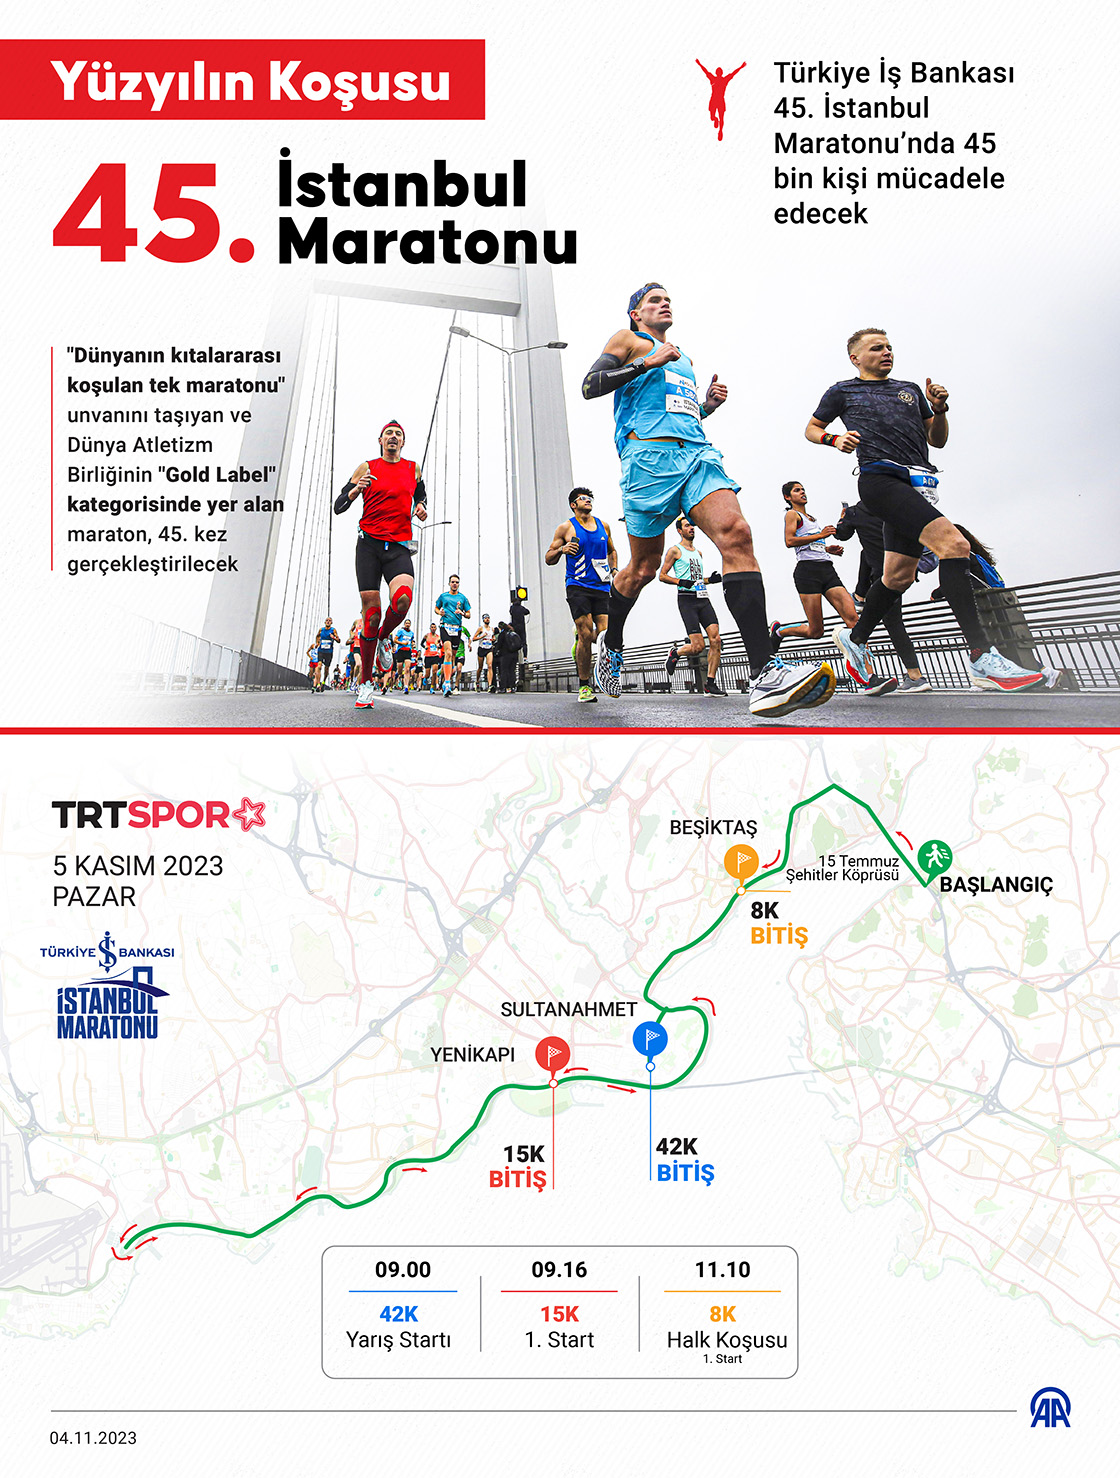 Yüzyılın Koşusu 45. İstanbul Maratonu